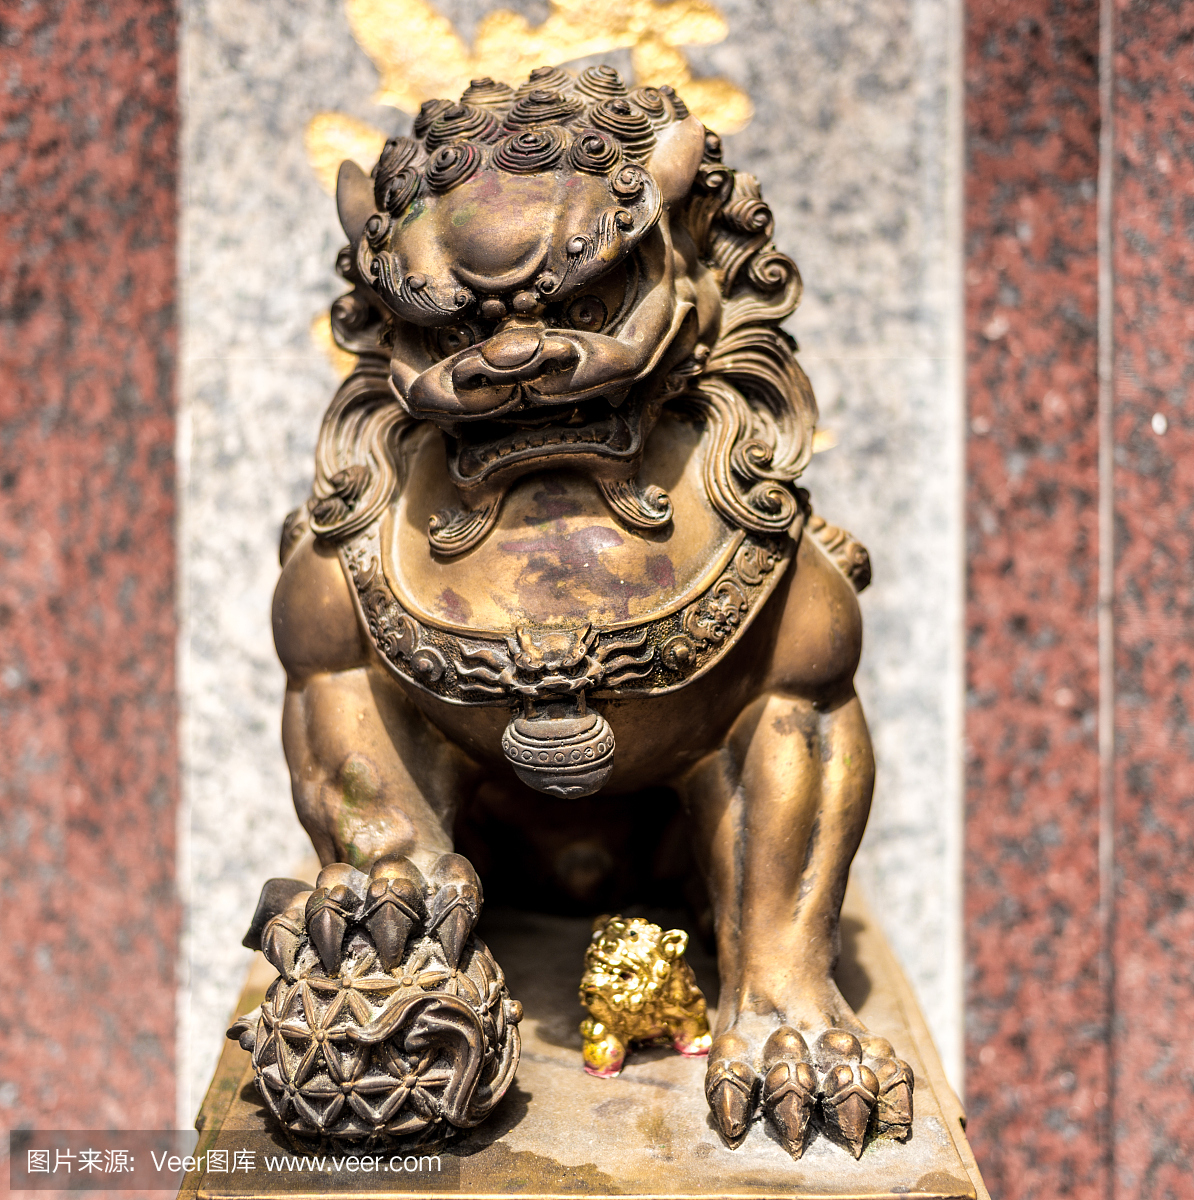 中国青铜狮子雕像与花岗岩背景。